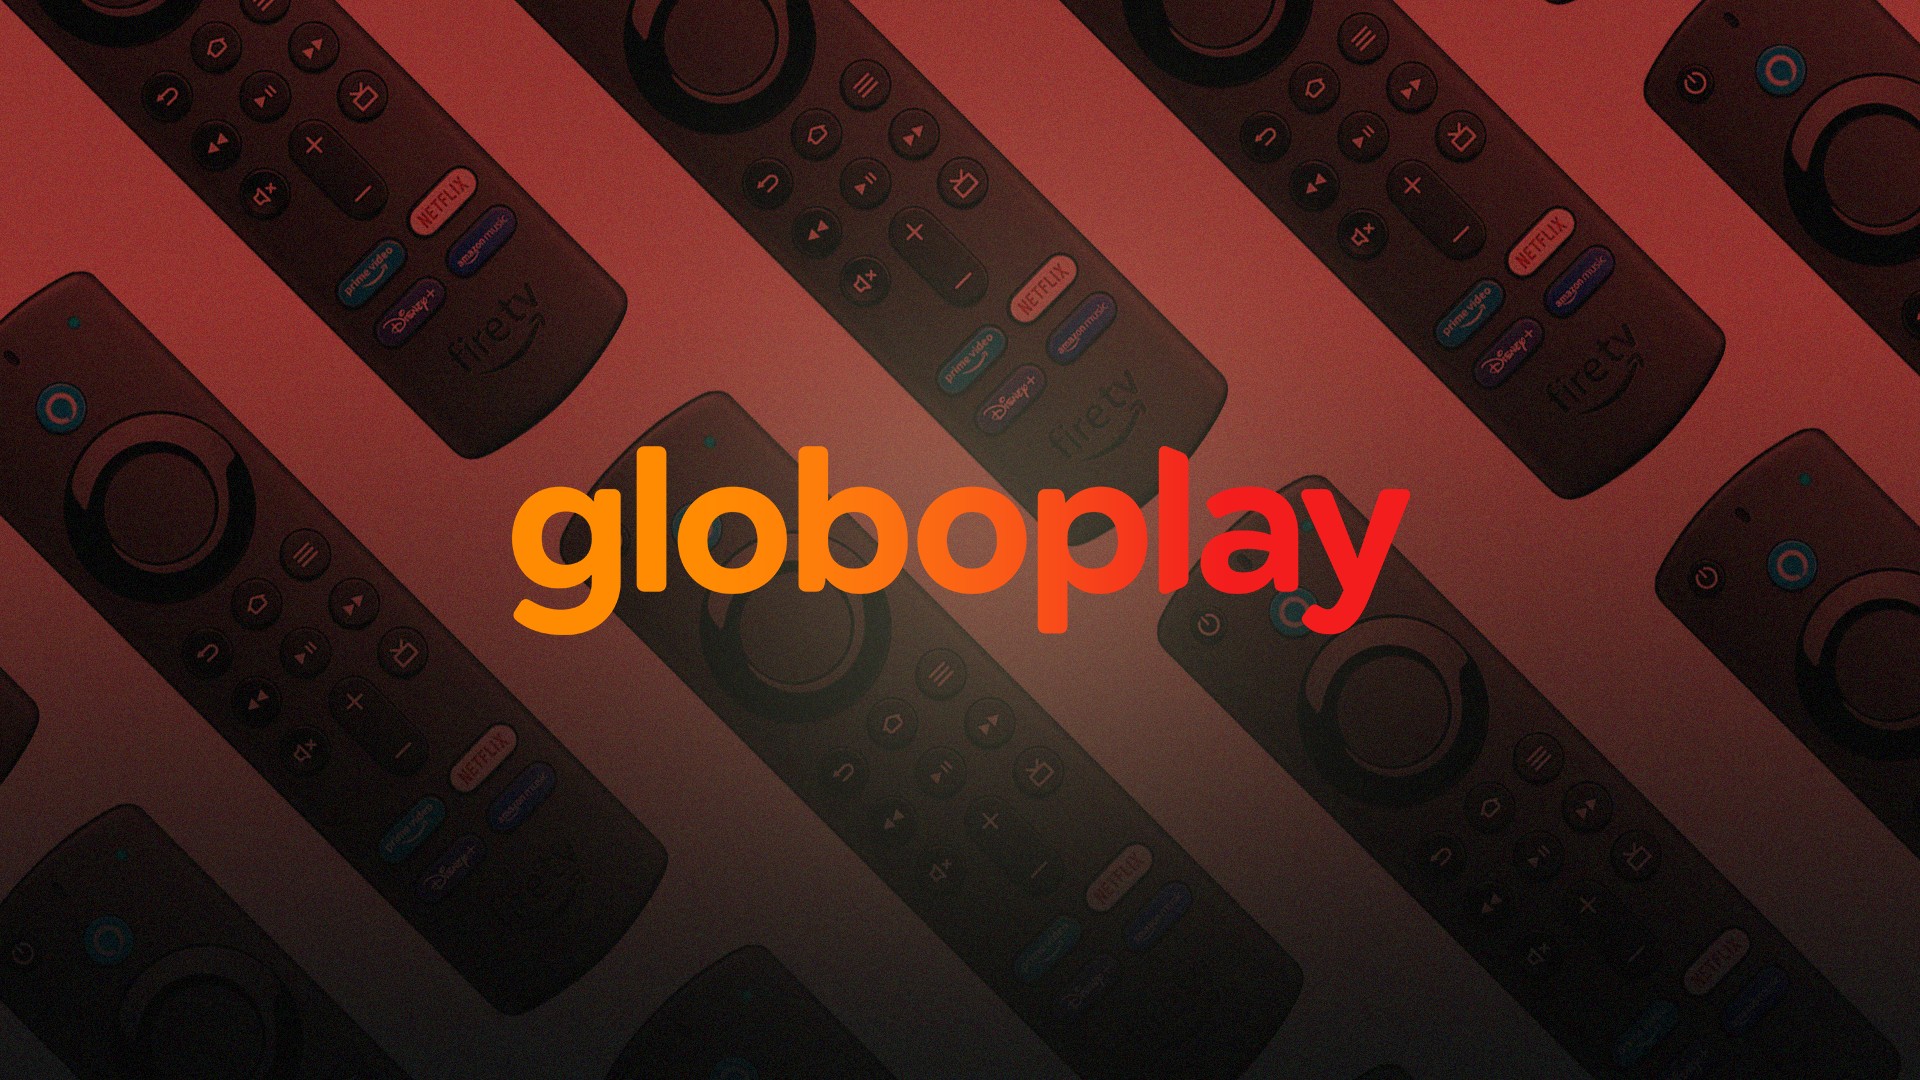 Globoplay passa Netflix em número de assinantes no Brasil